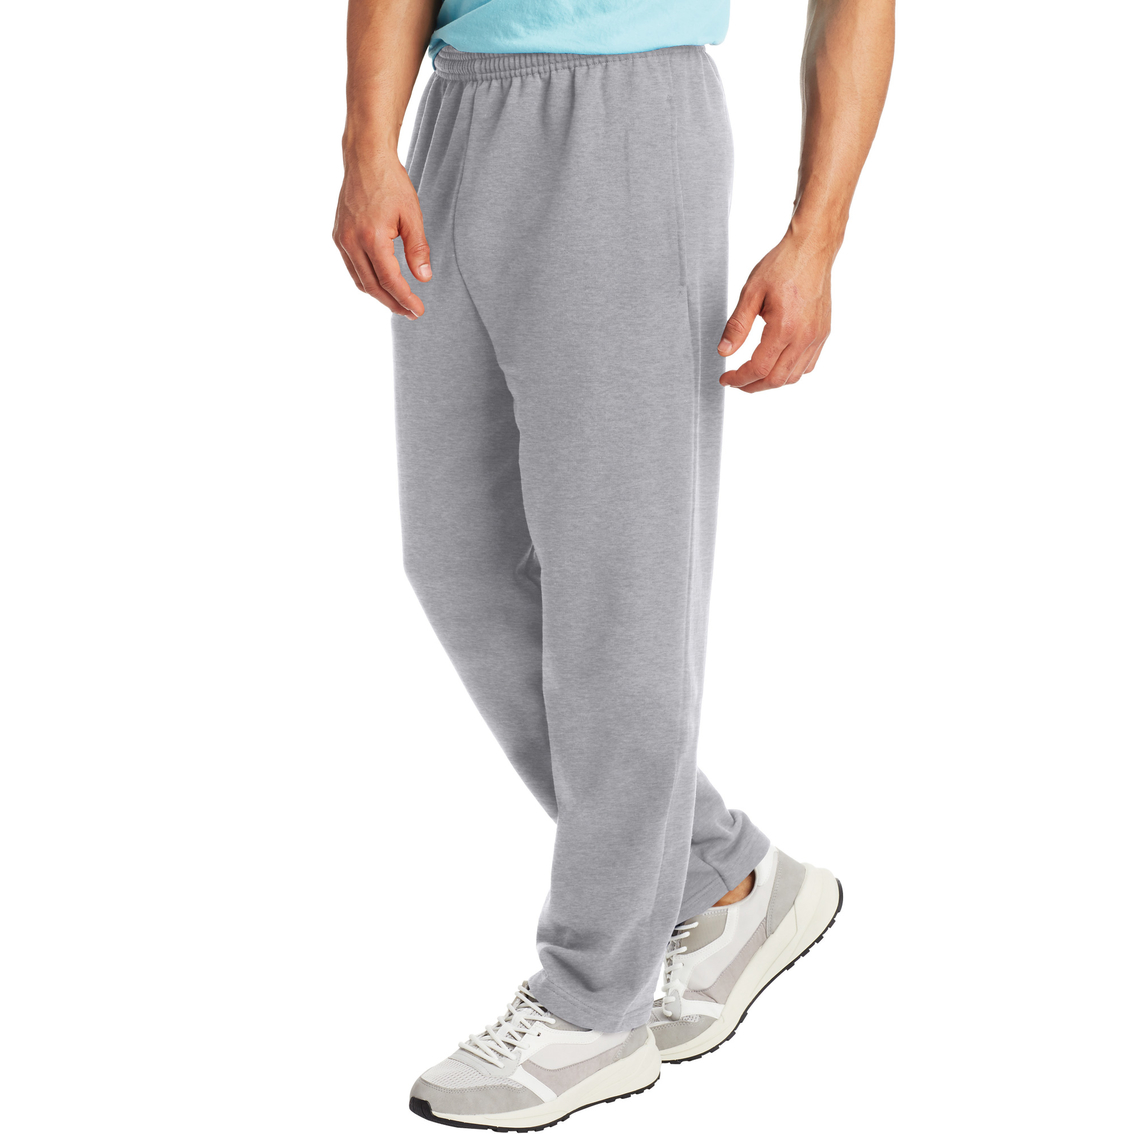 Hanes Ecosmart Fleece Sweatpants With Pockets | Pants | Clothing ...